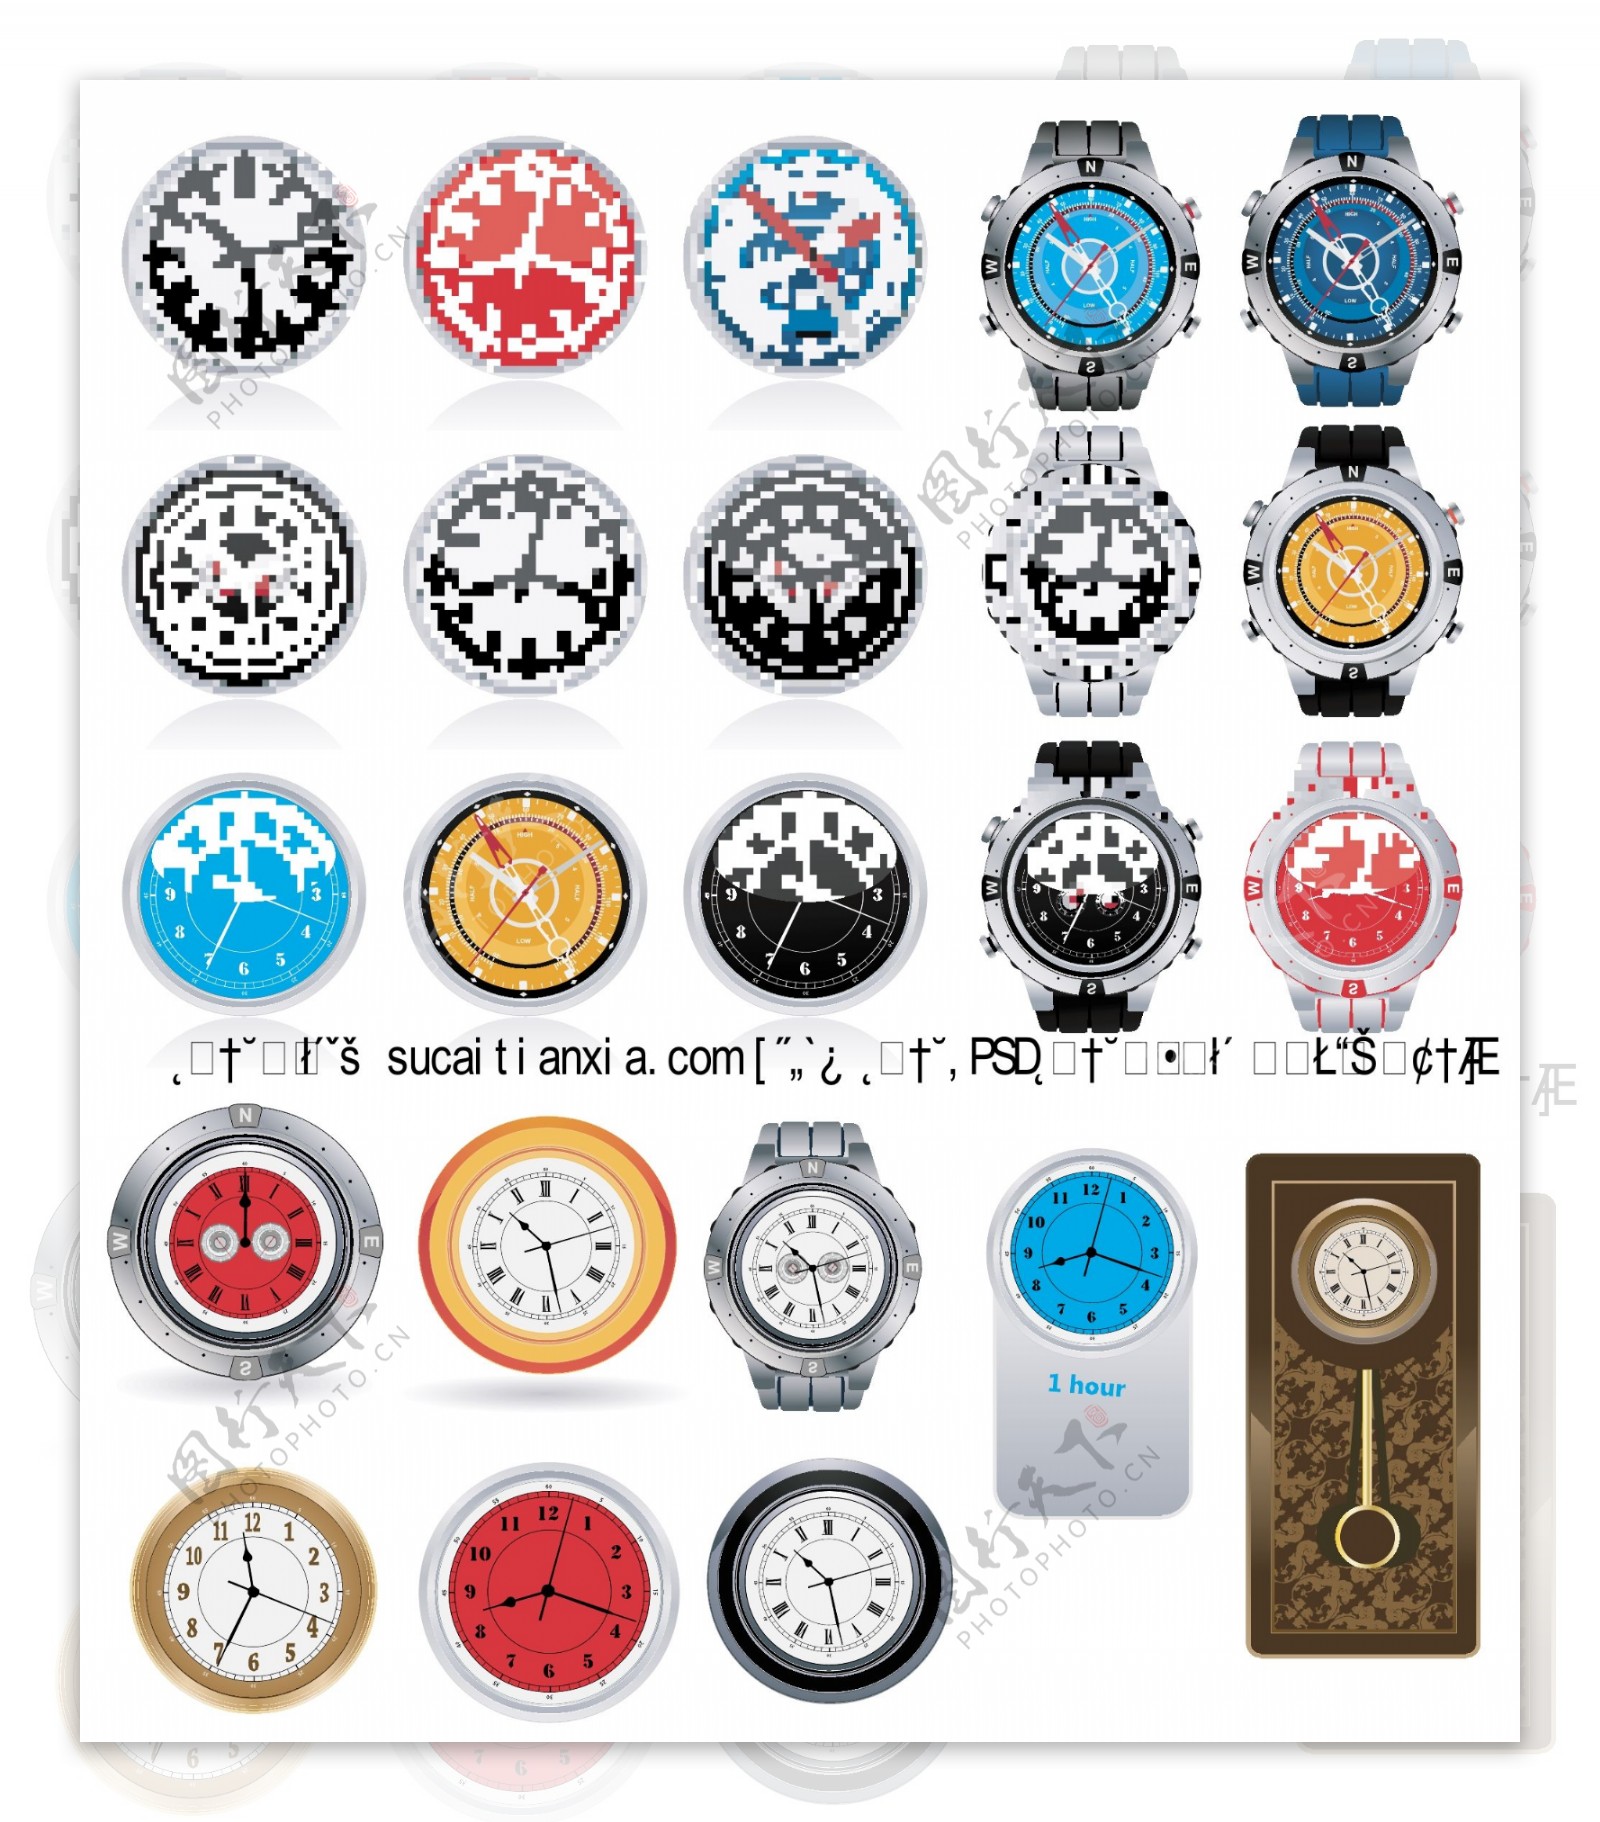 时钟手表设计矢量素材